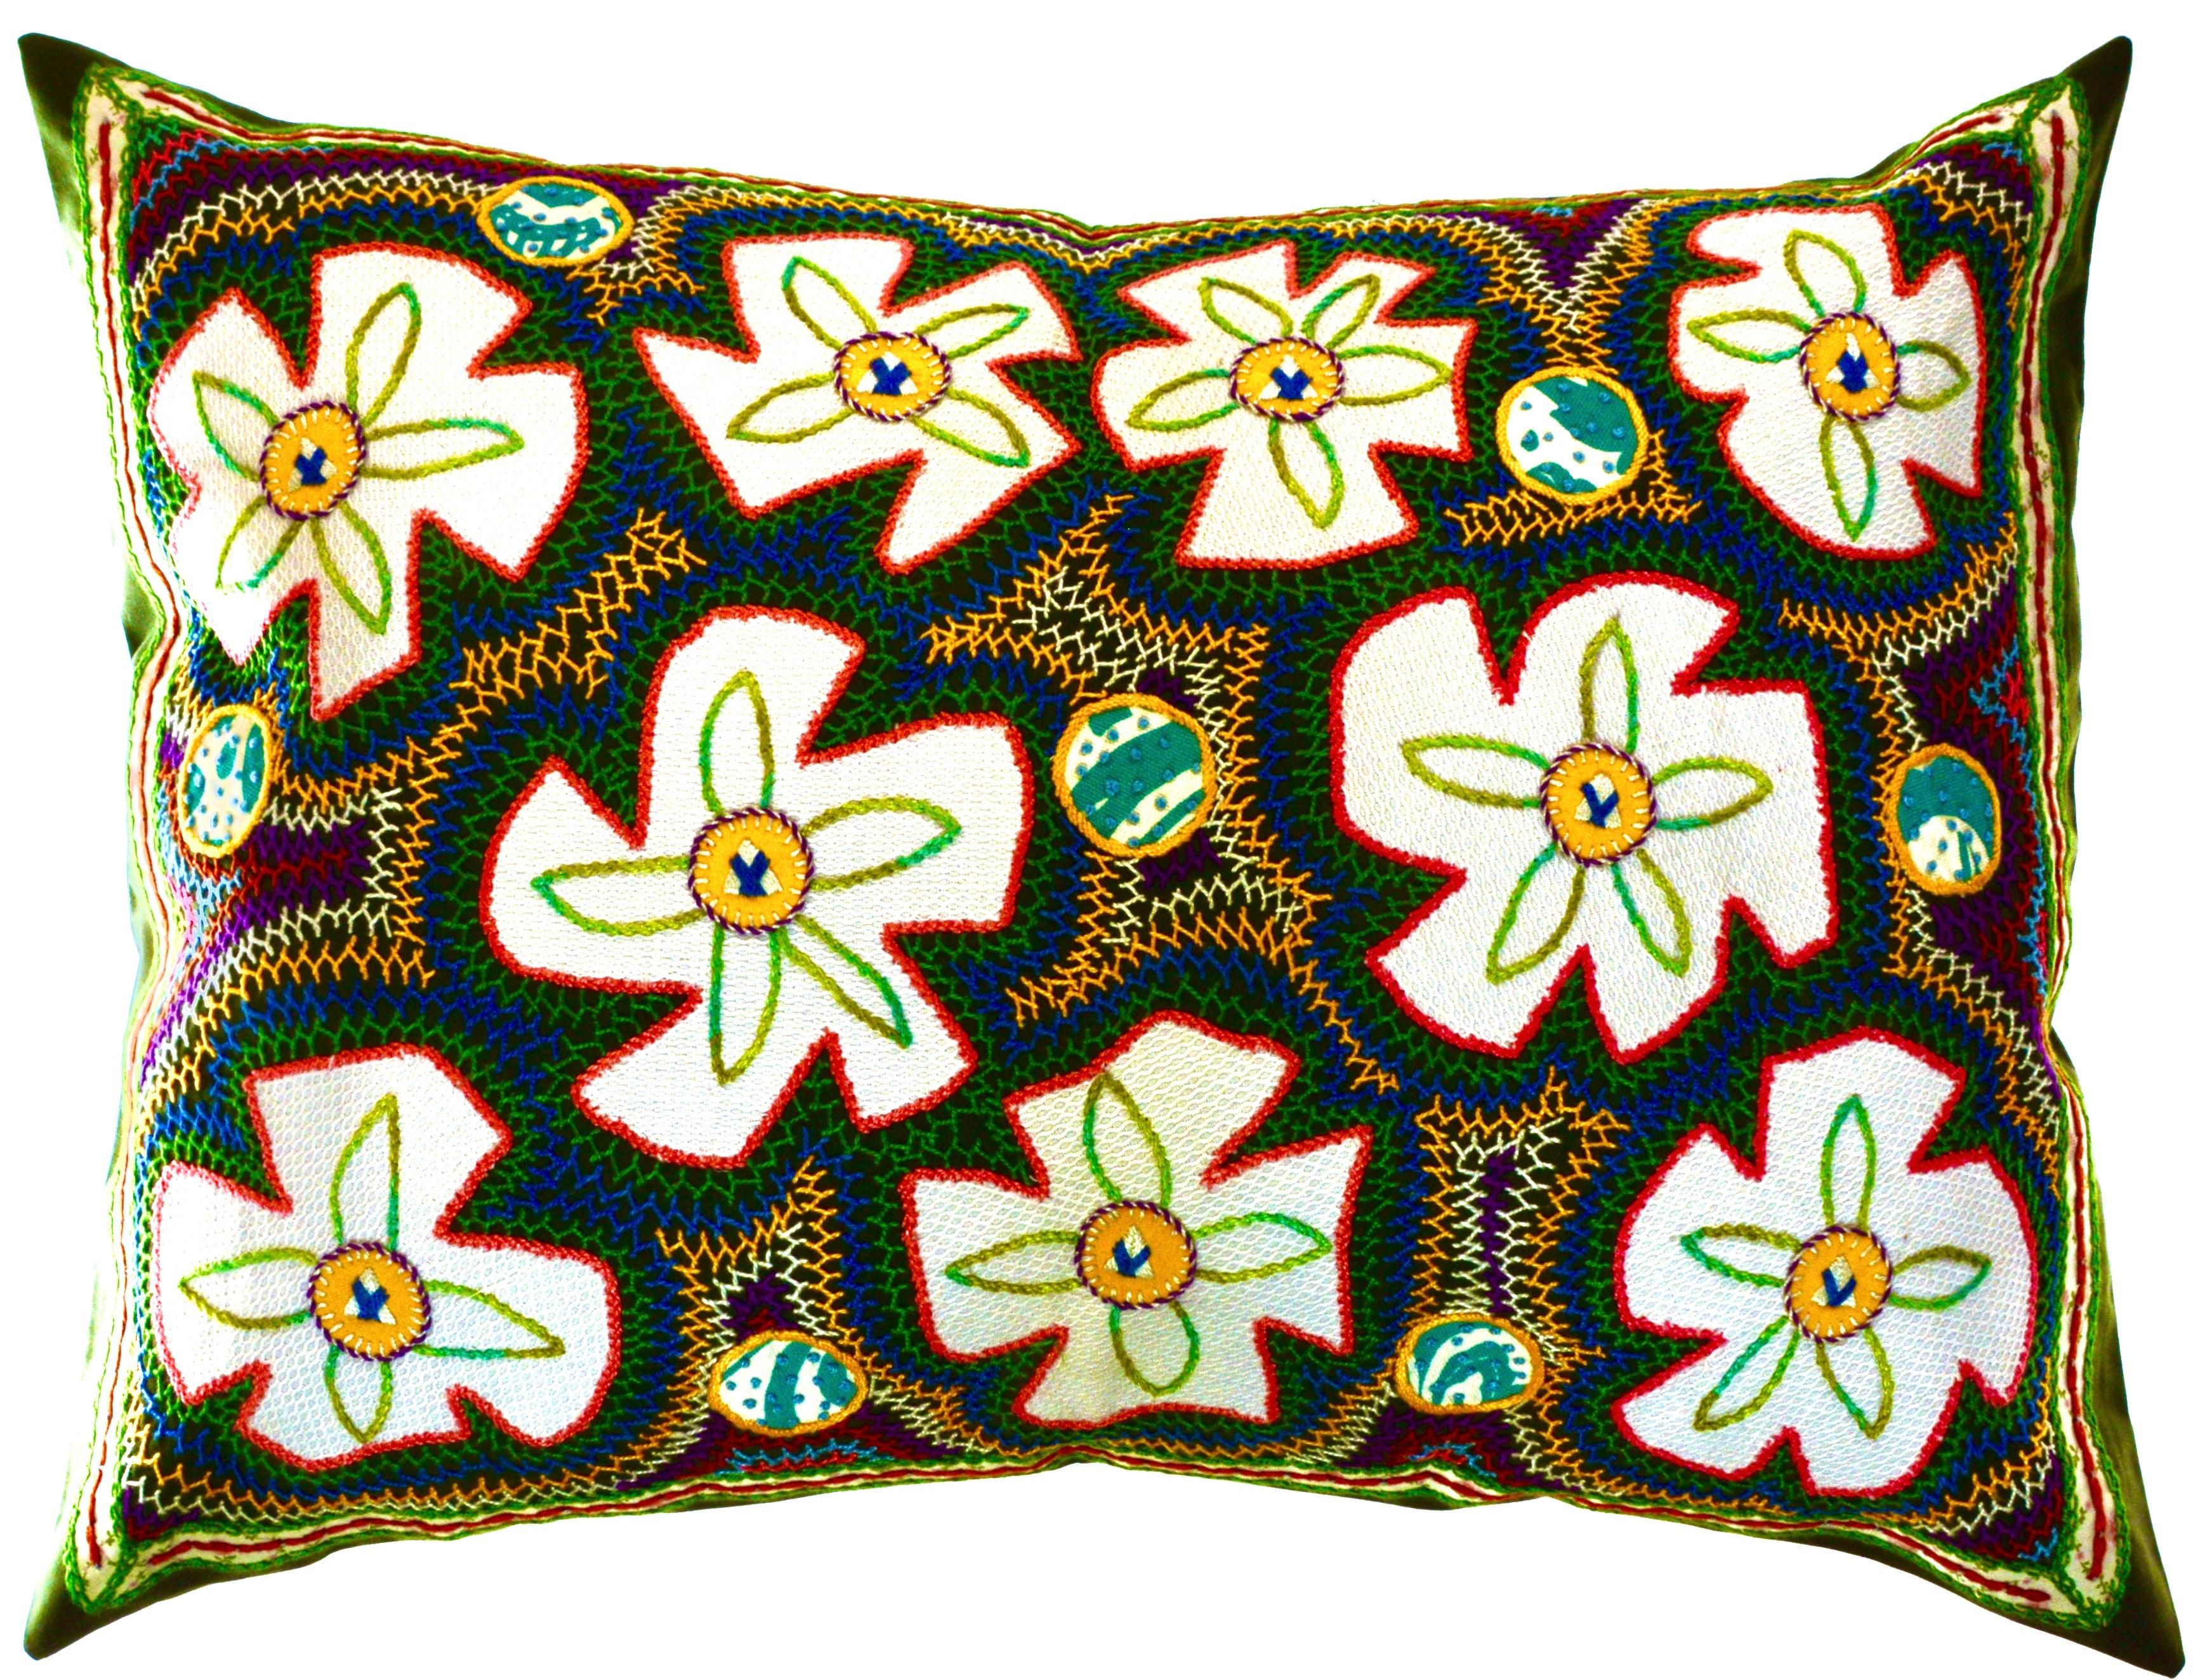 Flores Design Embroidered Pillow on Dark green Honduras Threads